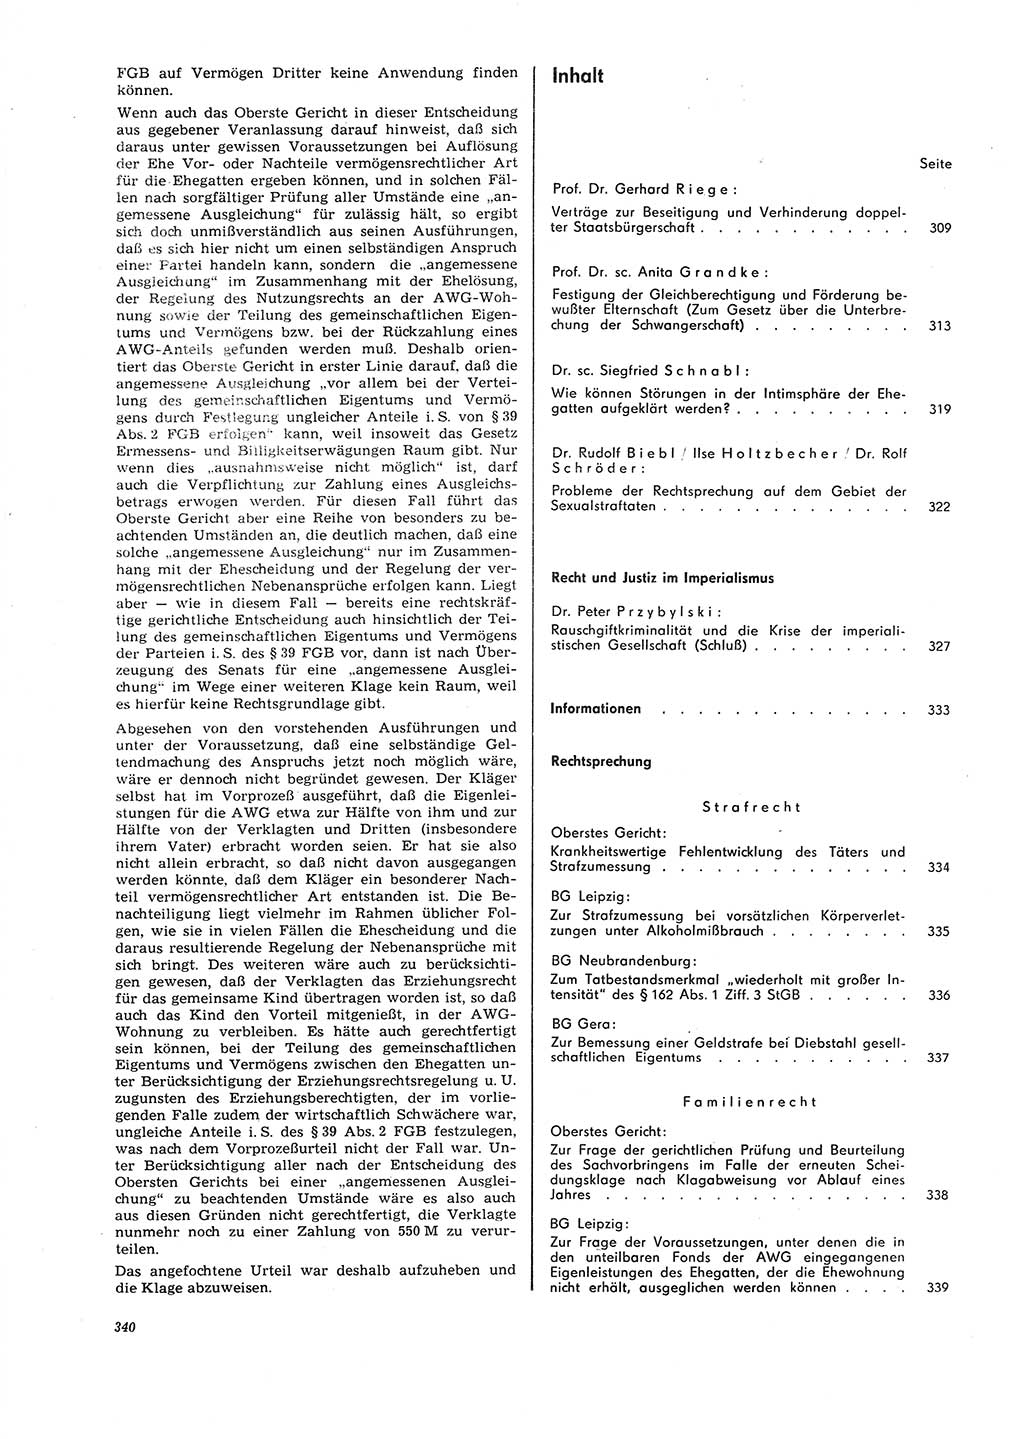 Neue Justiz (NJ), Zeitschrift für Recht und Rechtswissenschaft [Deutsche Demokratische Republik (DDR)], 26. Jahrgang 1972, Seite 340 (NJ DDR 1972, S. 340)